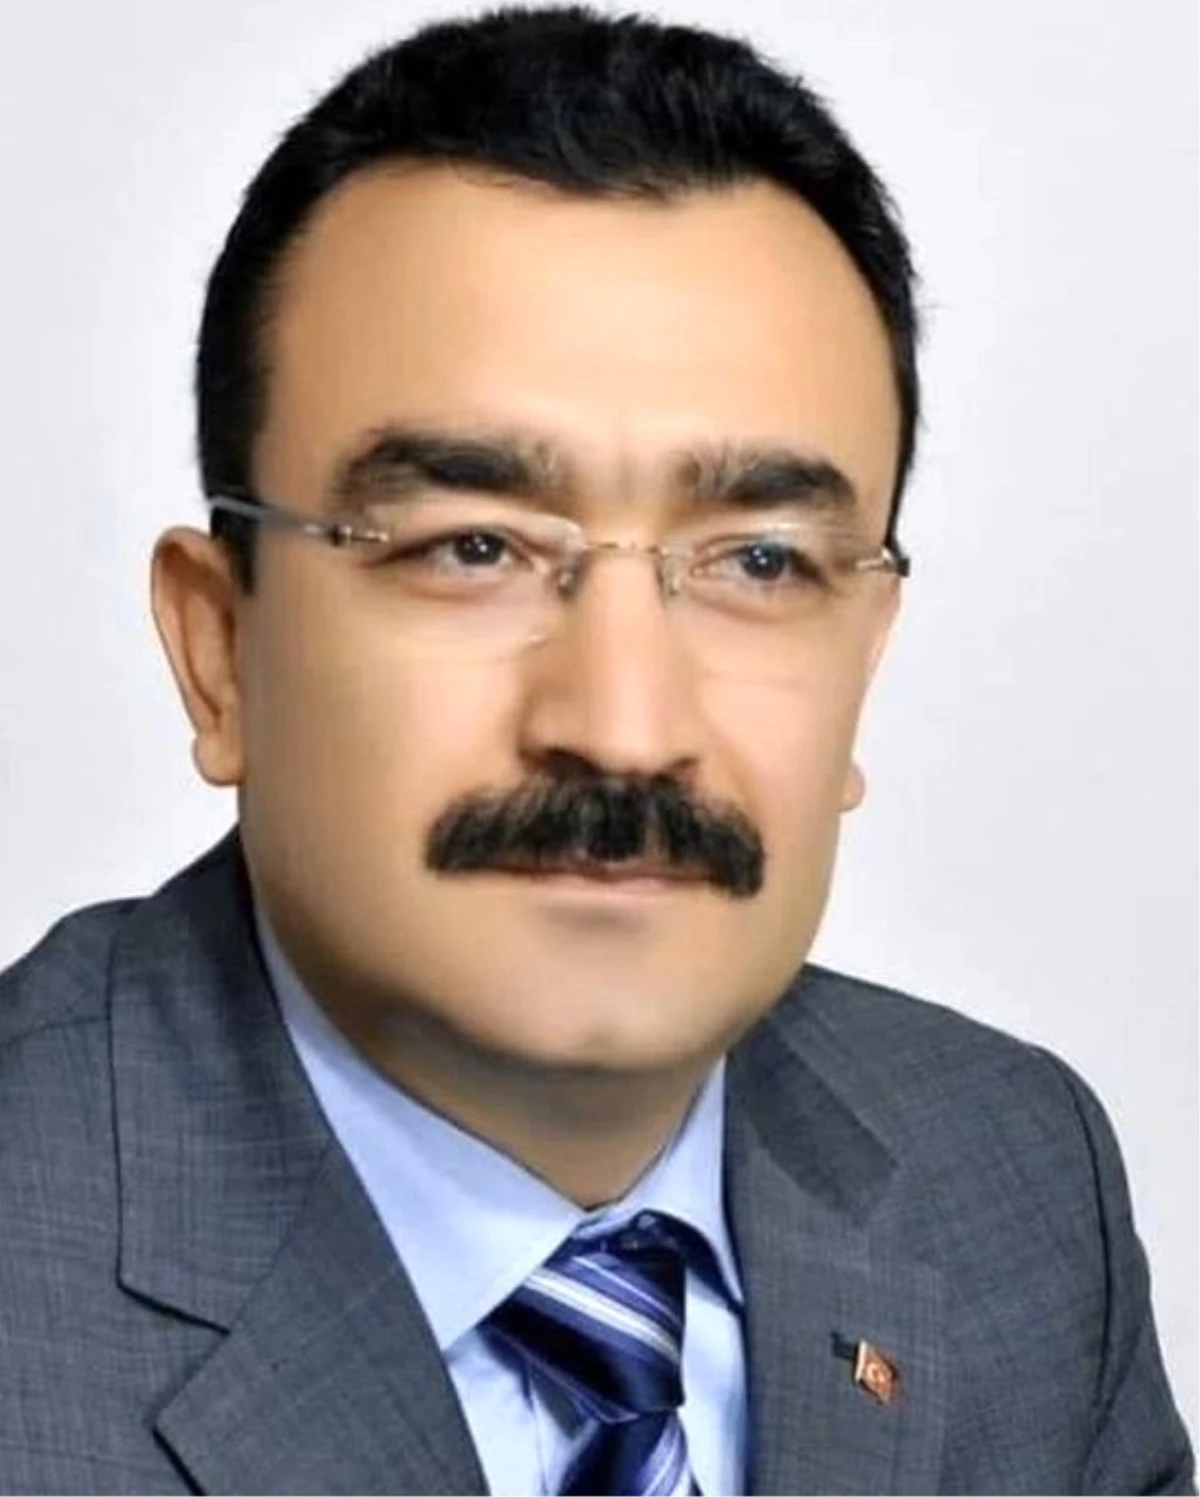 24. Dönem Milletvekili Türkoğlu vefat etti